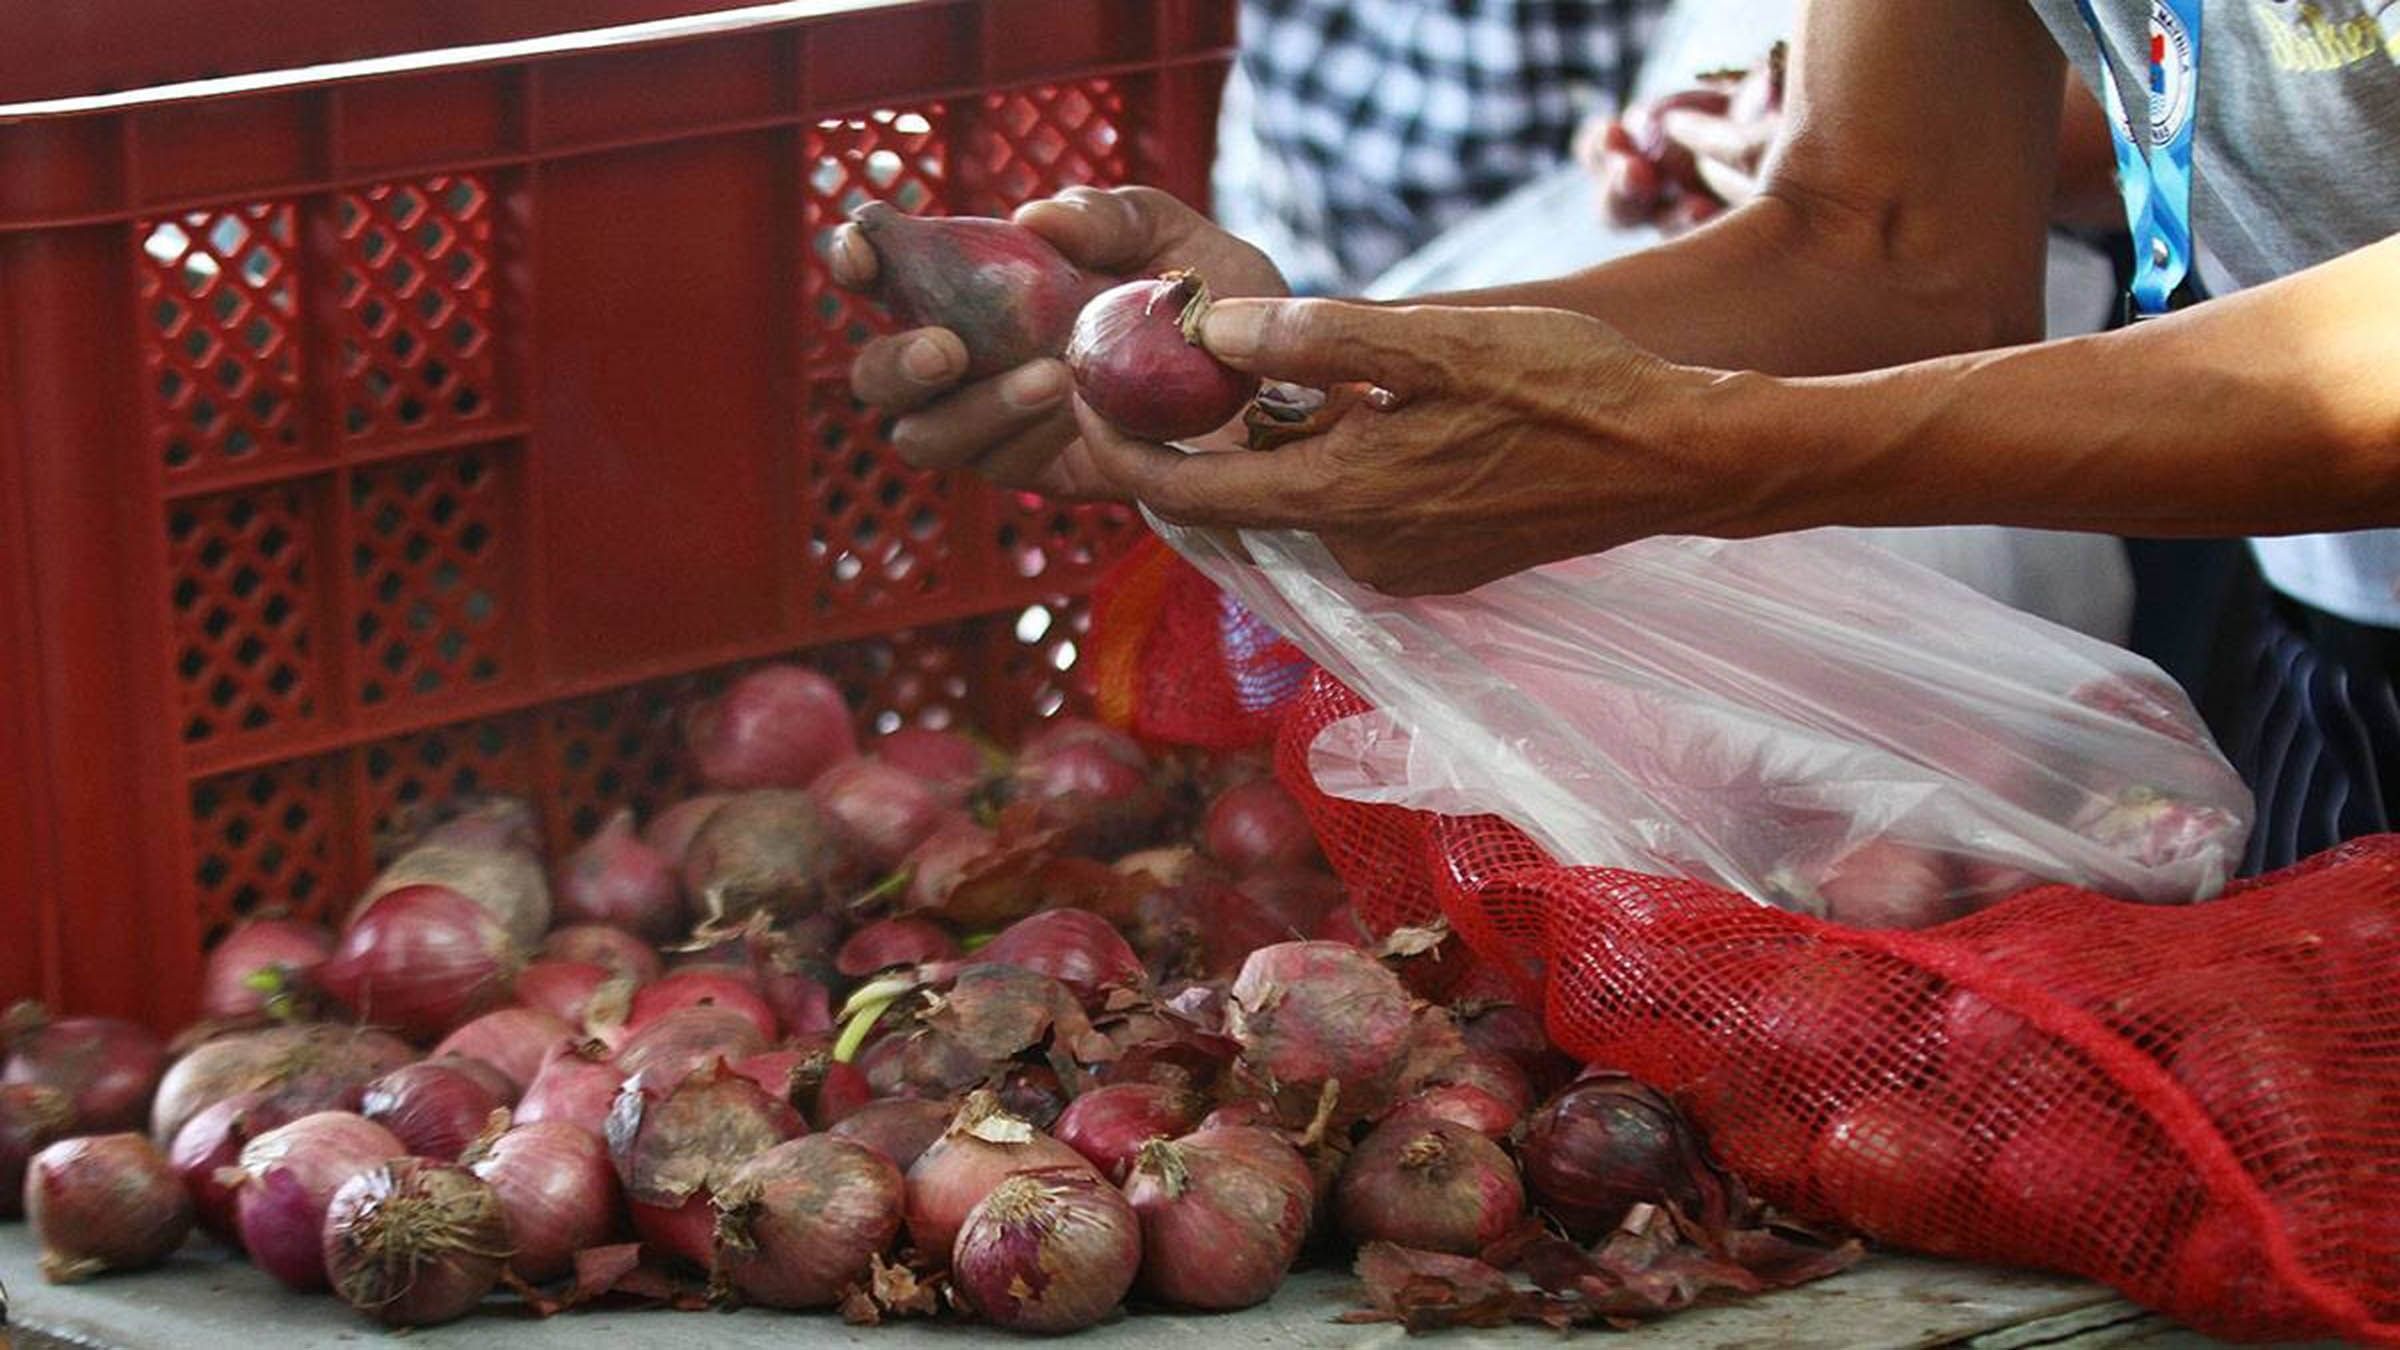 Onion prices to go down to P200 per kilo